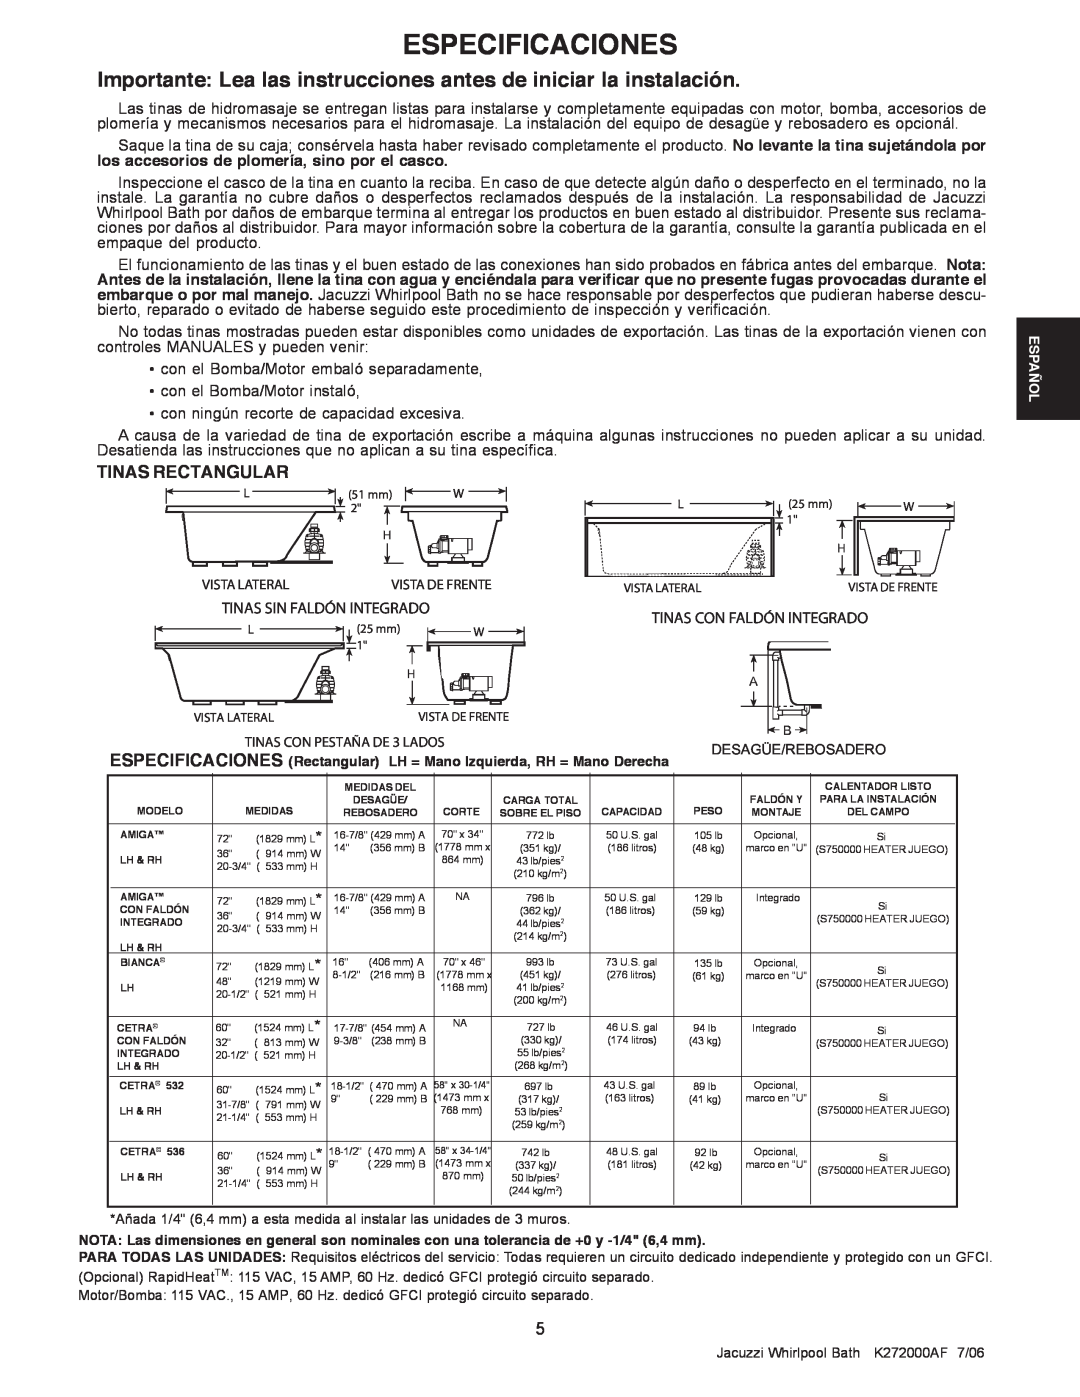 Jacuzzi K272000AF 7/06 manual Especificaciones, Importante Lea las instrucciones antes de iniciar la instalación 